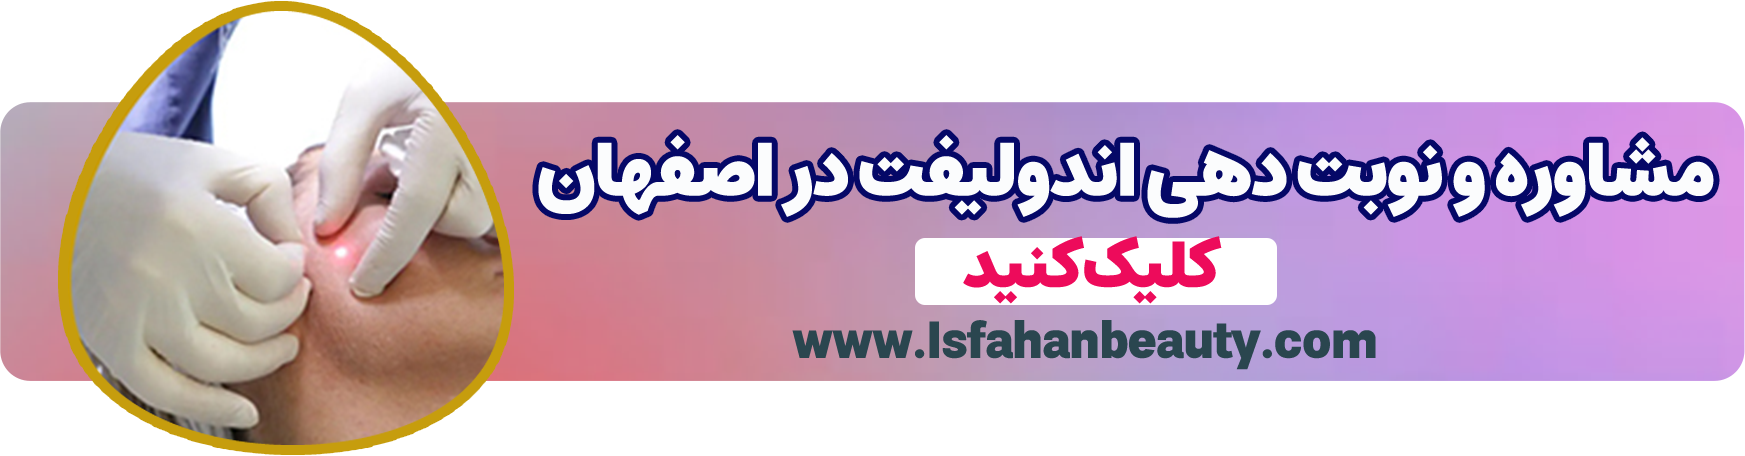 نوبت دهی اندولیفت| اصفهان بیوتی